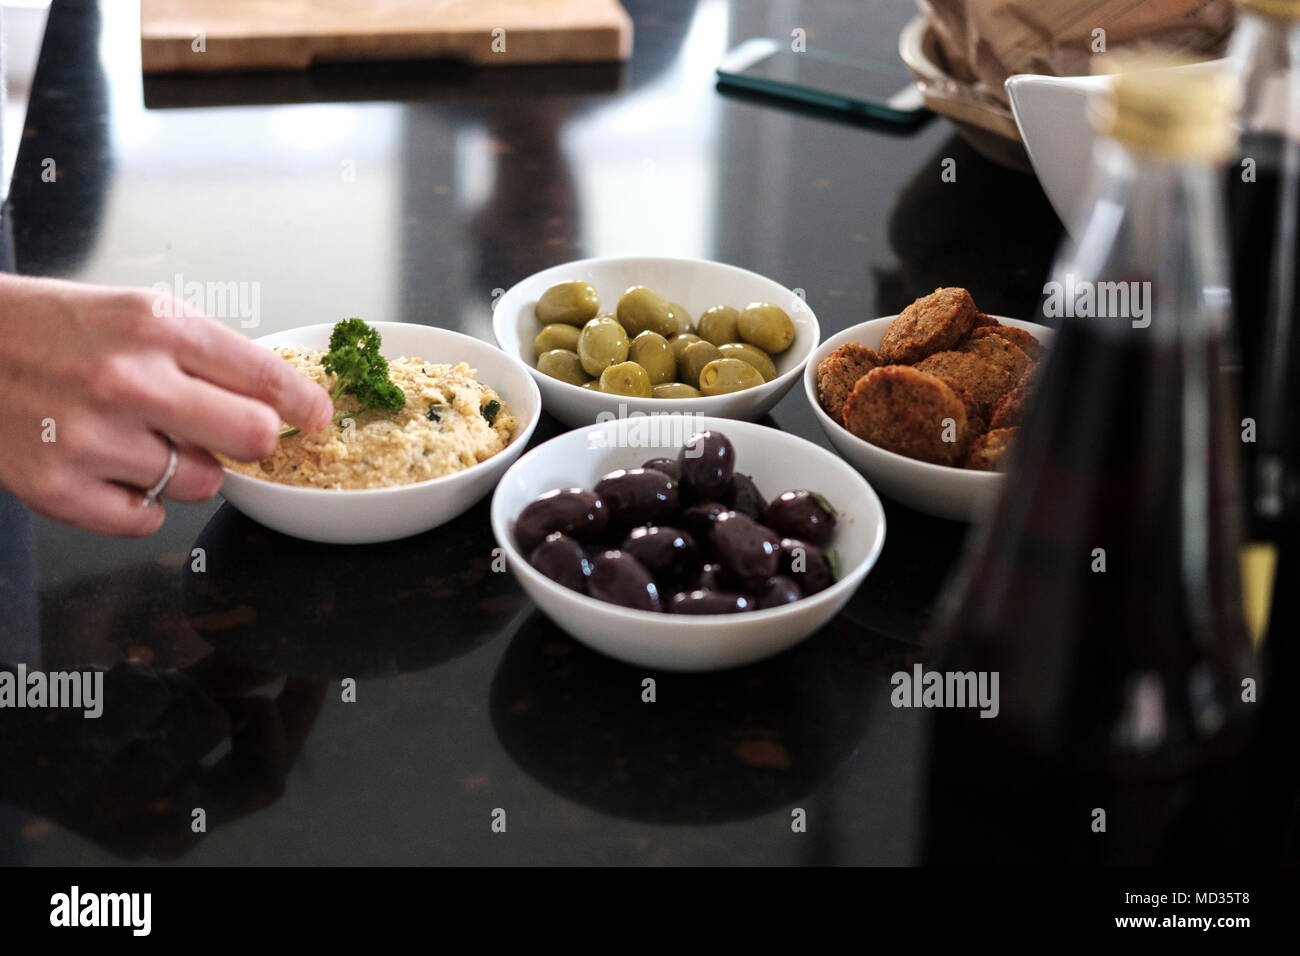 Hummus classic,olive nere e verdi e i falafel,gruppo di amici snacking casualmente su una selezione di prodotti alimentari ridendo e divertendosi. Foto Stock